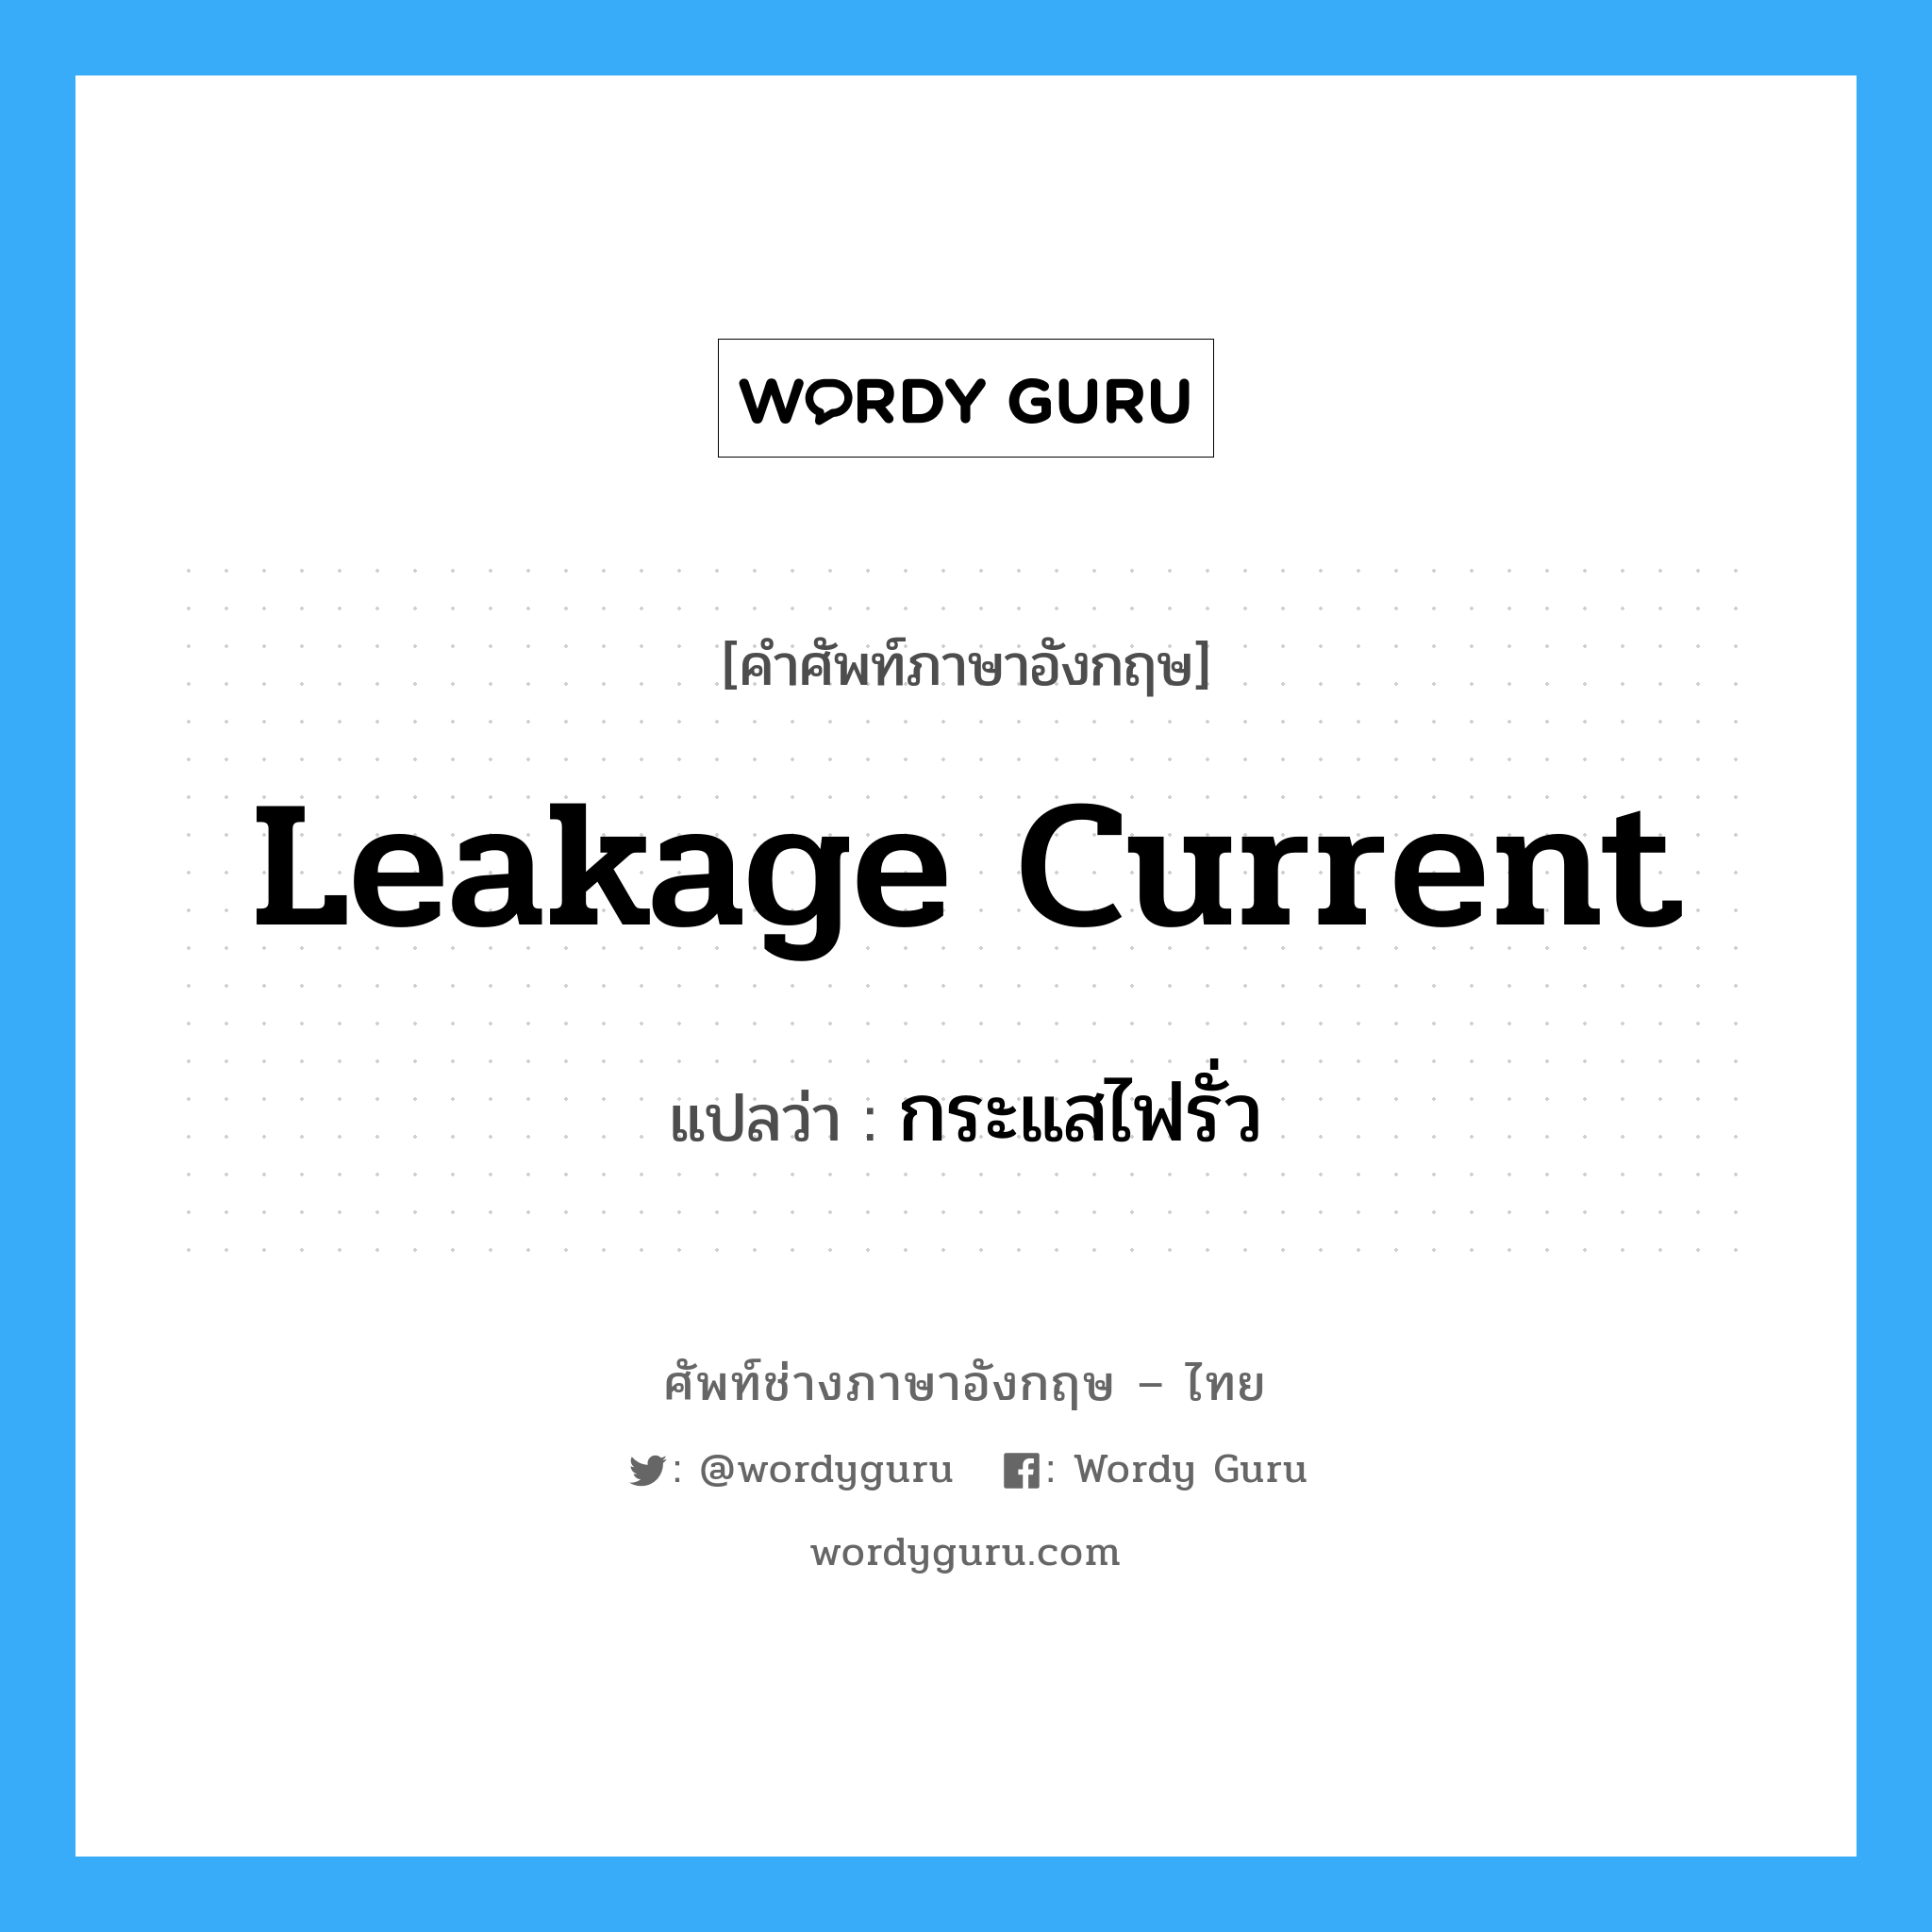 leakage current แปลว่า?, คำศัพท์ช่างภาษาอังกฤษ - ไทย leakage current คำศัพท์ภาษาอังกฤษ leakage current แปลว่า กระแสไฟรั่ว